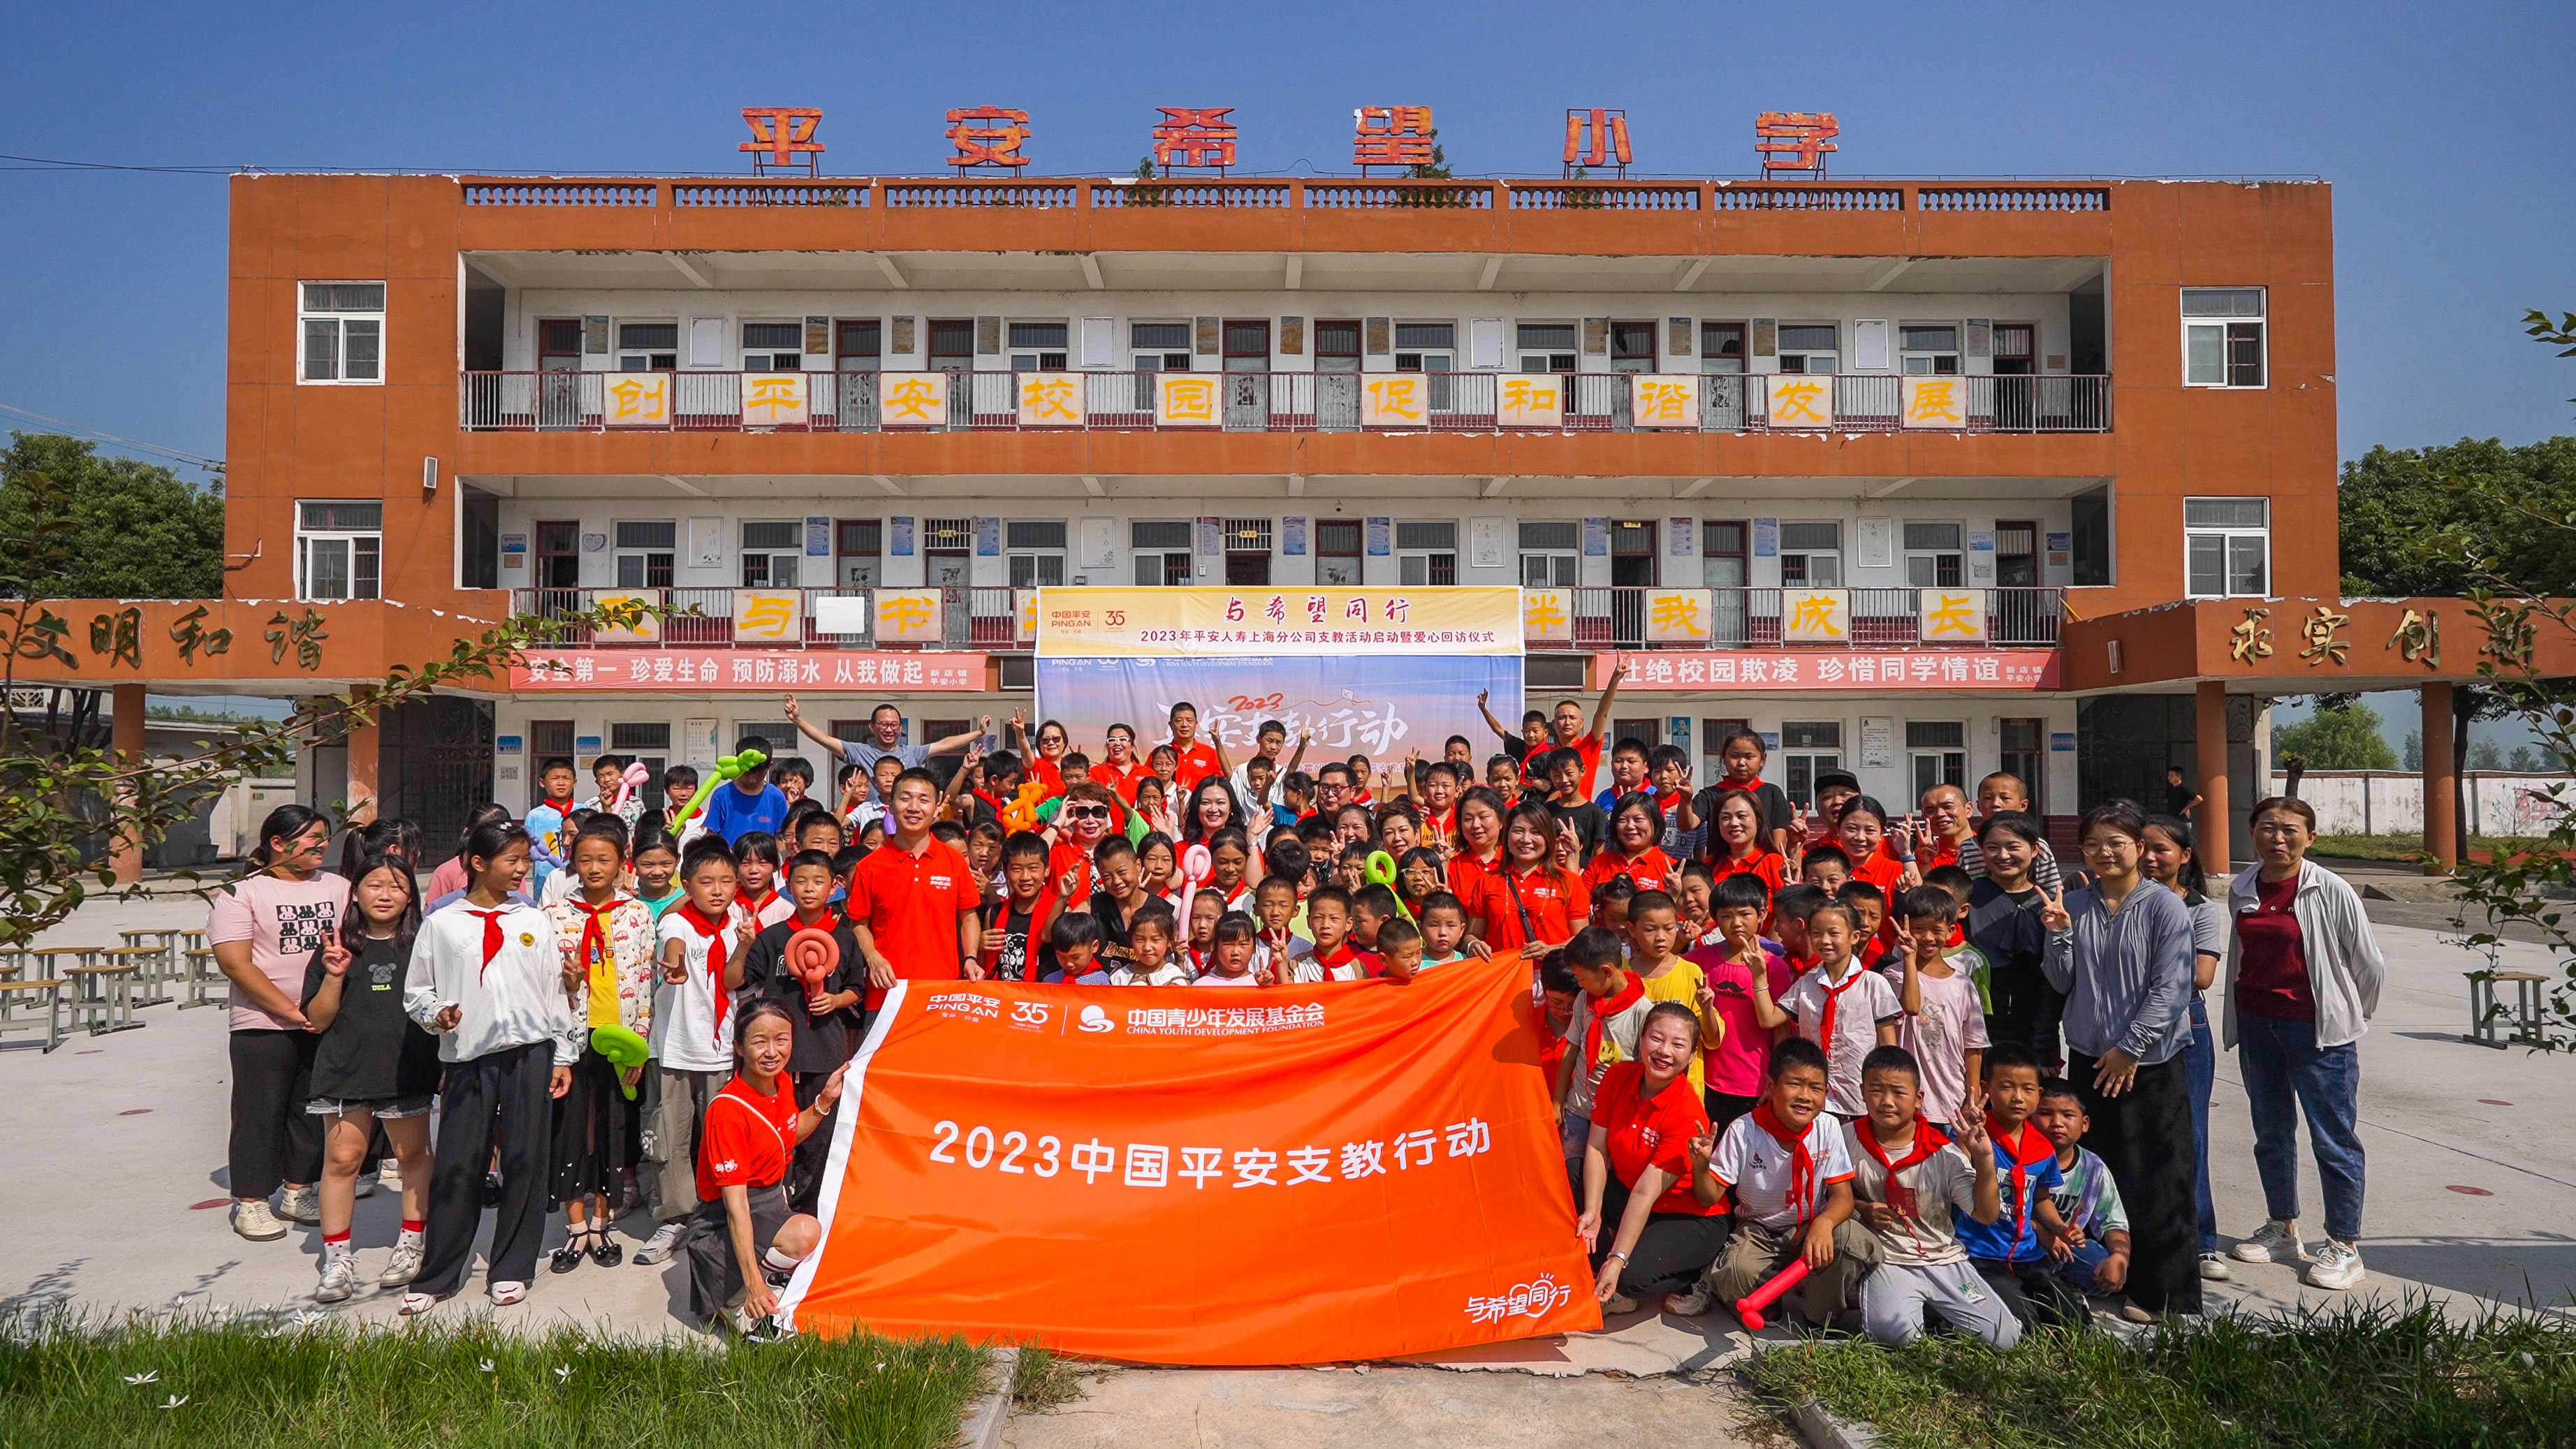 与希望同行！平安人寿上海分公司开展年度希望小学支教、回访活动